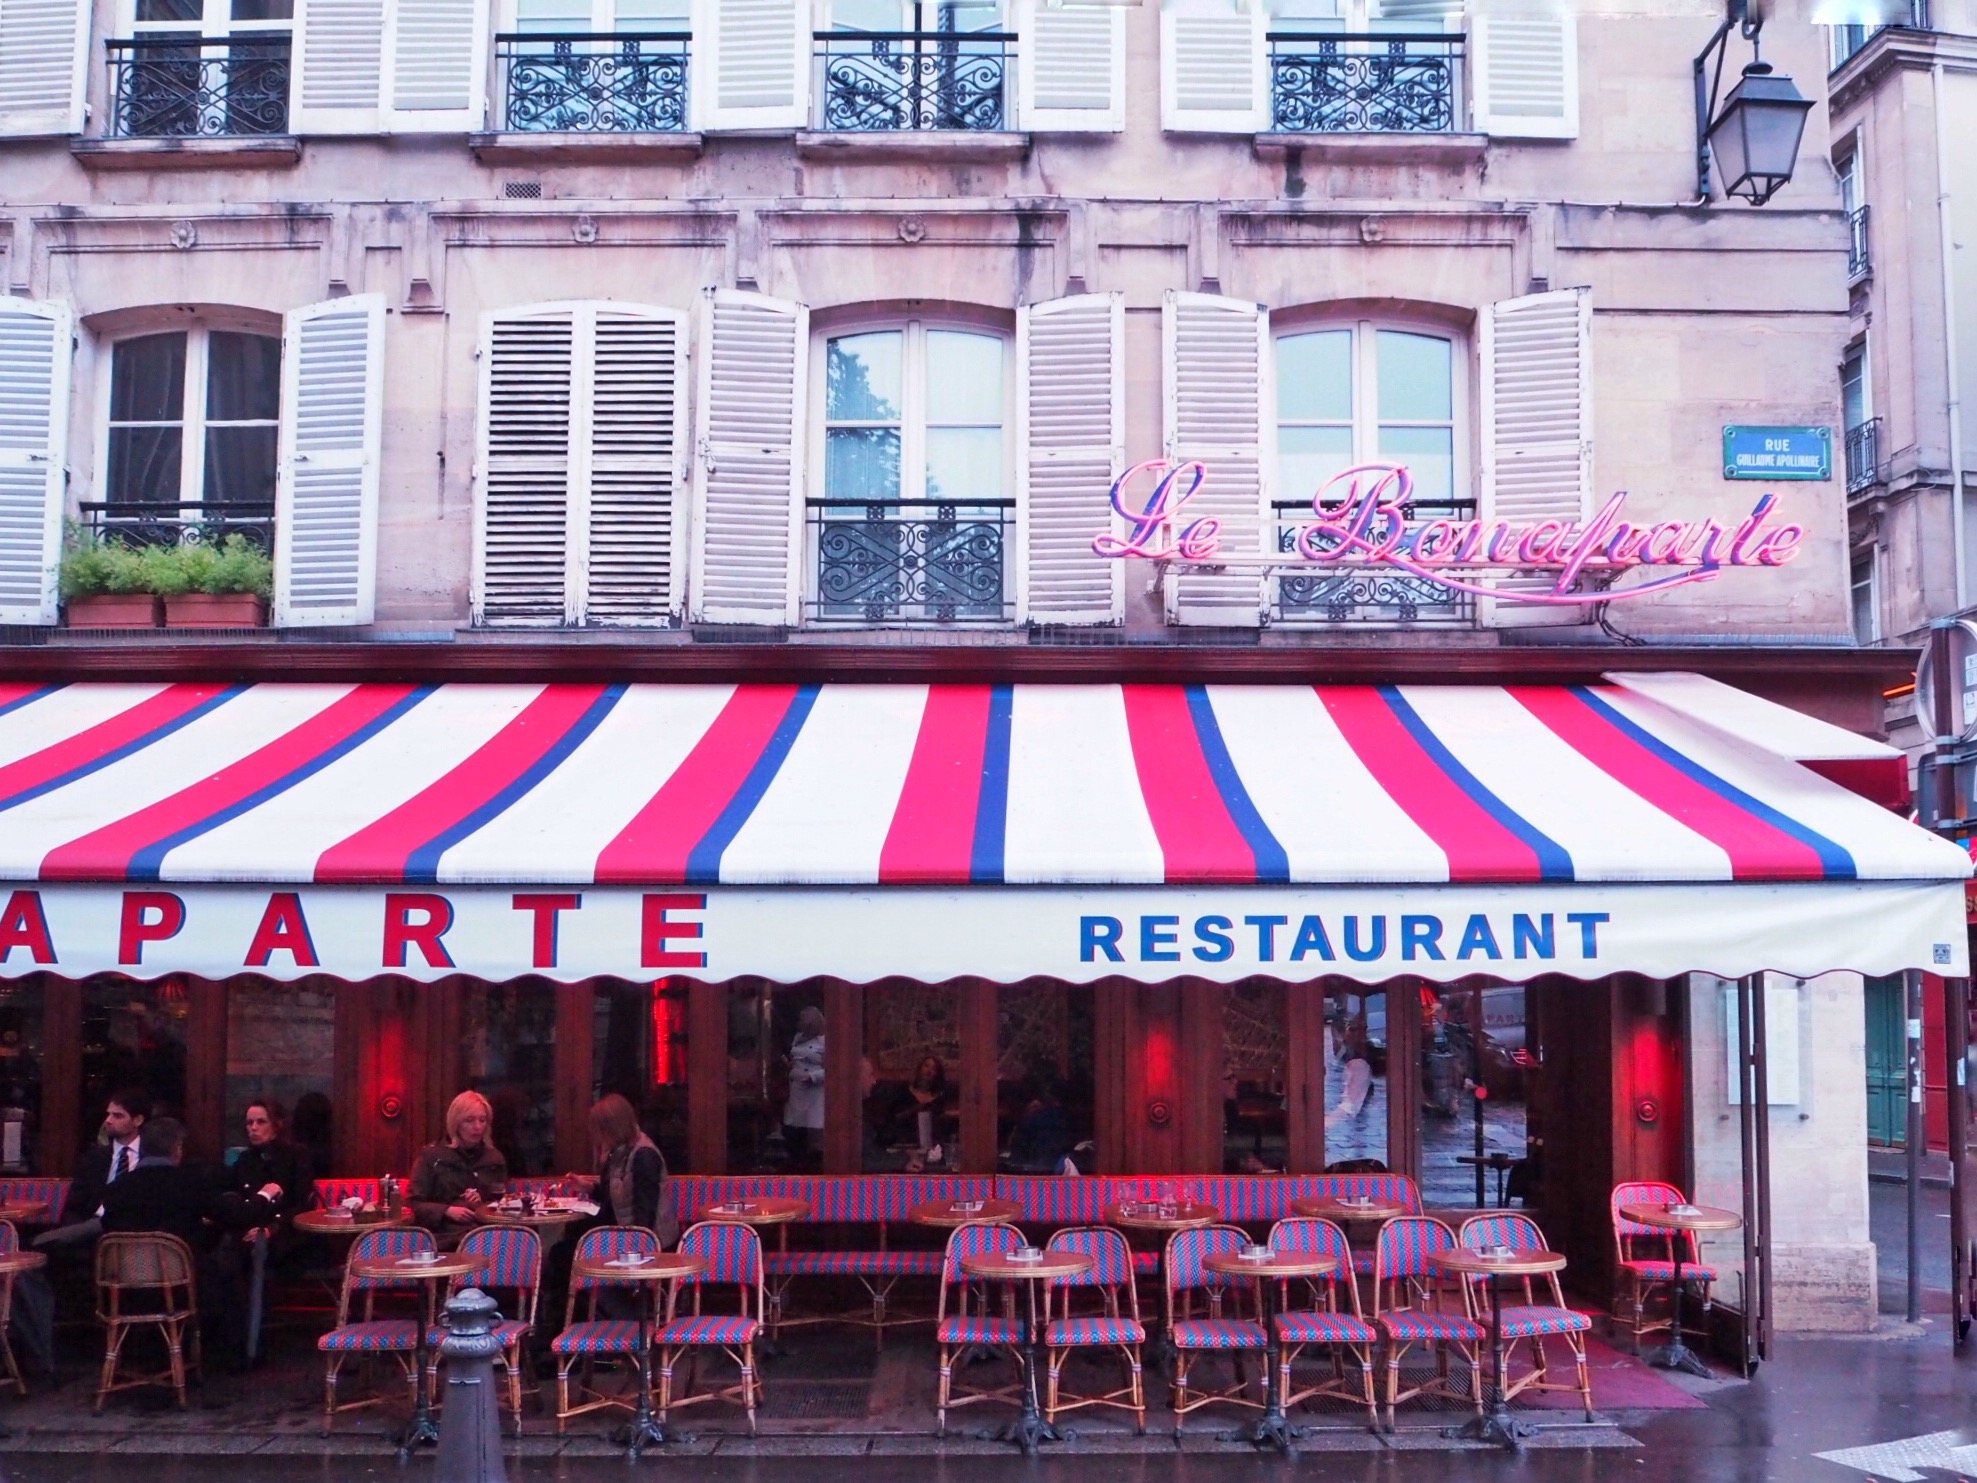 A Girl, A Style: Cafe Bonaparte, Paris